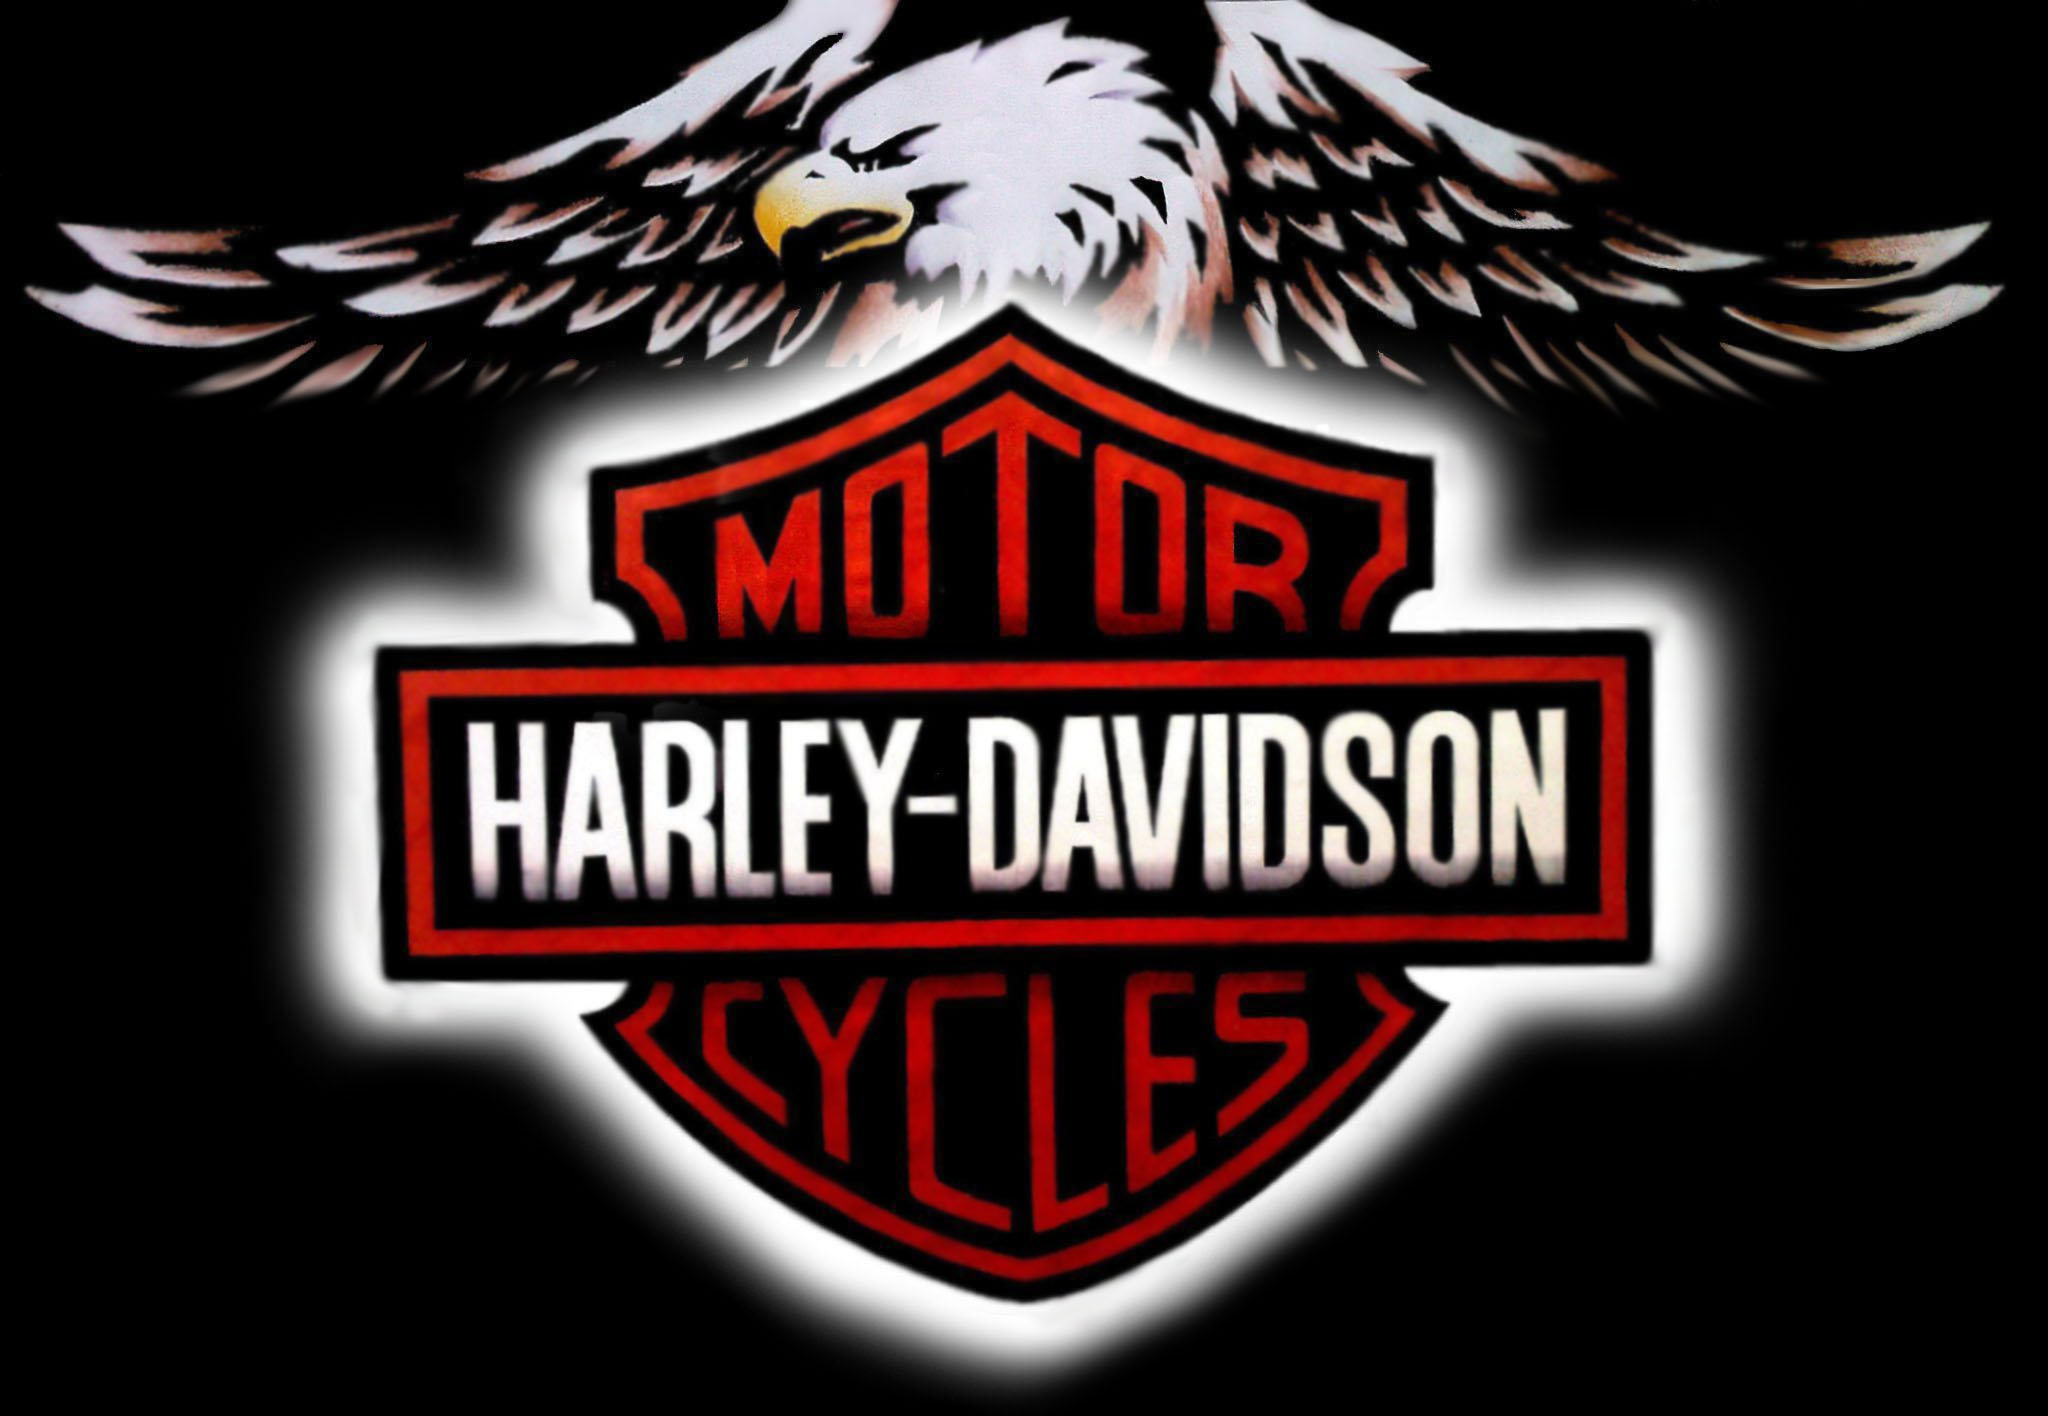  Logo Harley Davidson Motorcycles and Harley Davidson Wallpaper 2048x1416